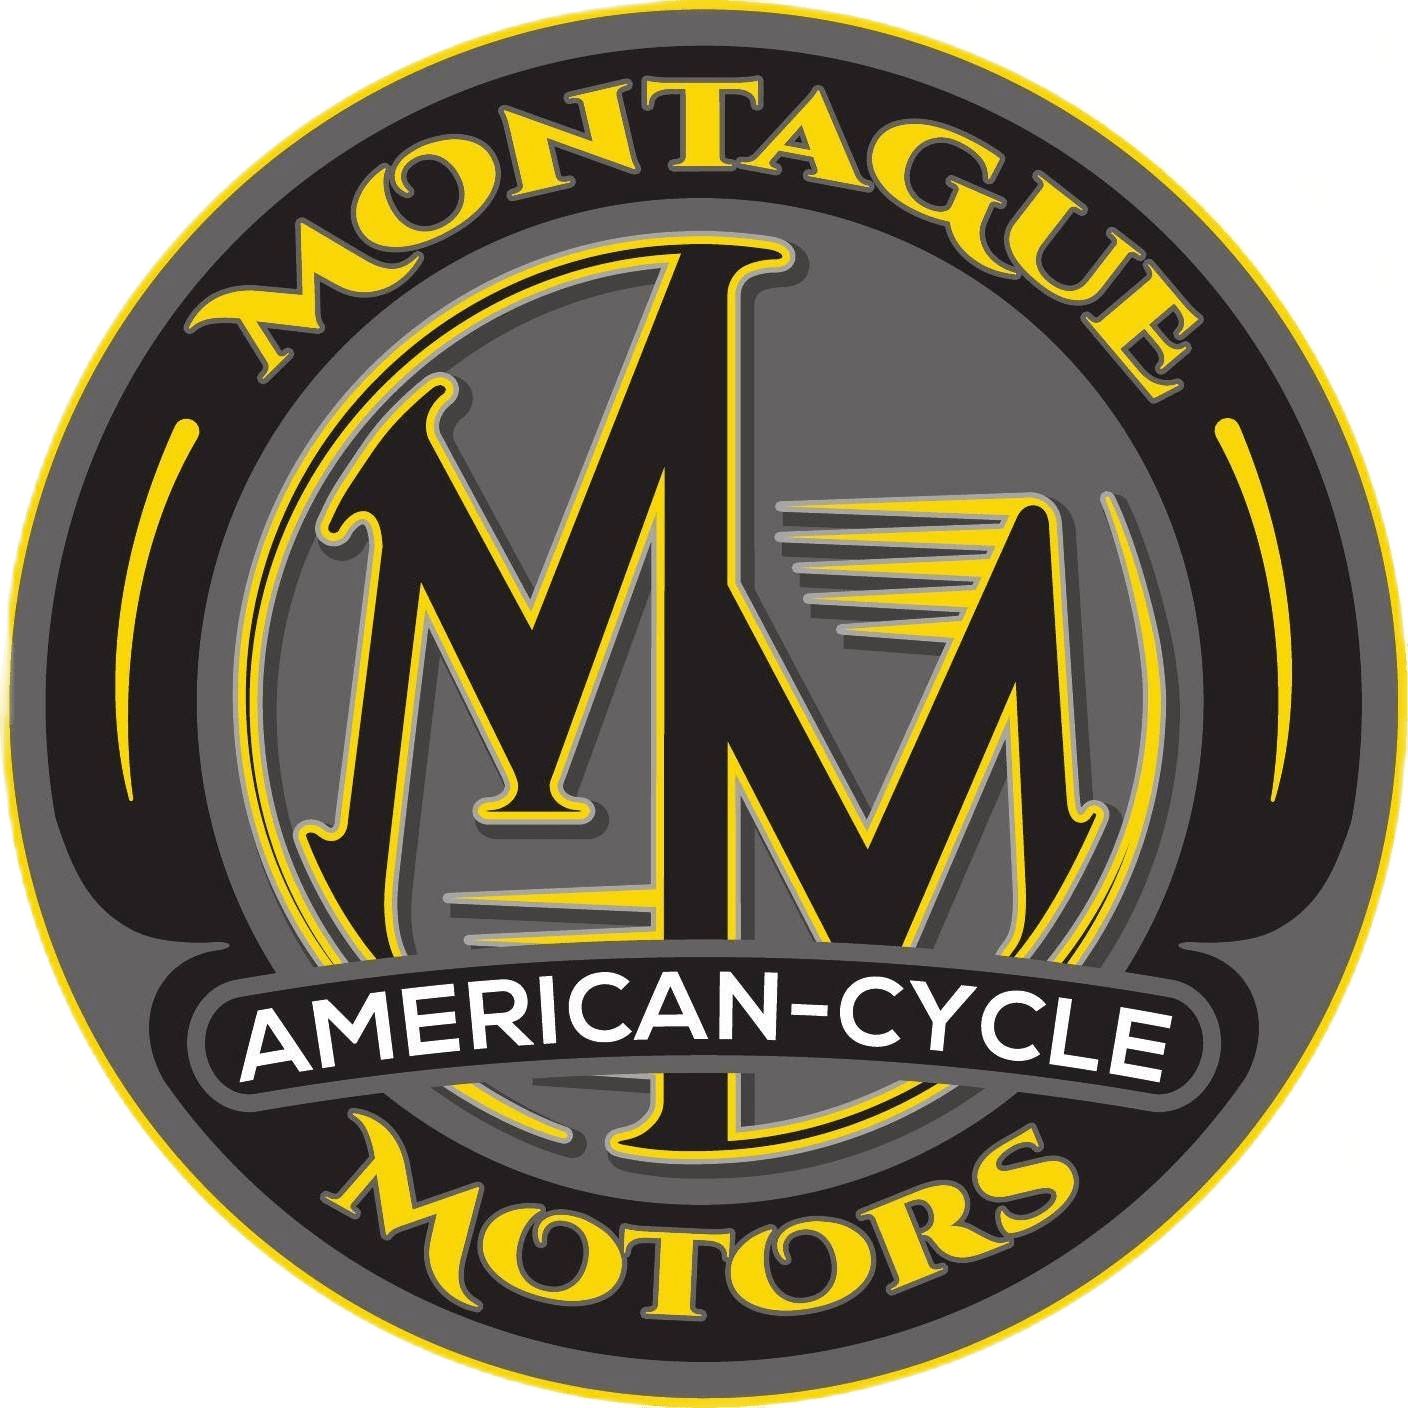 Montague Motors